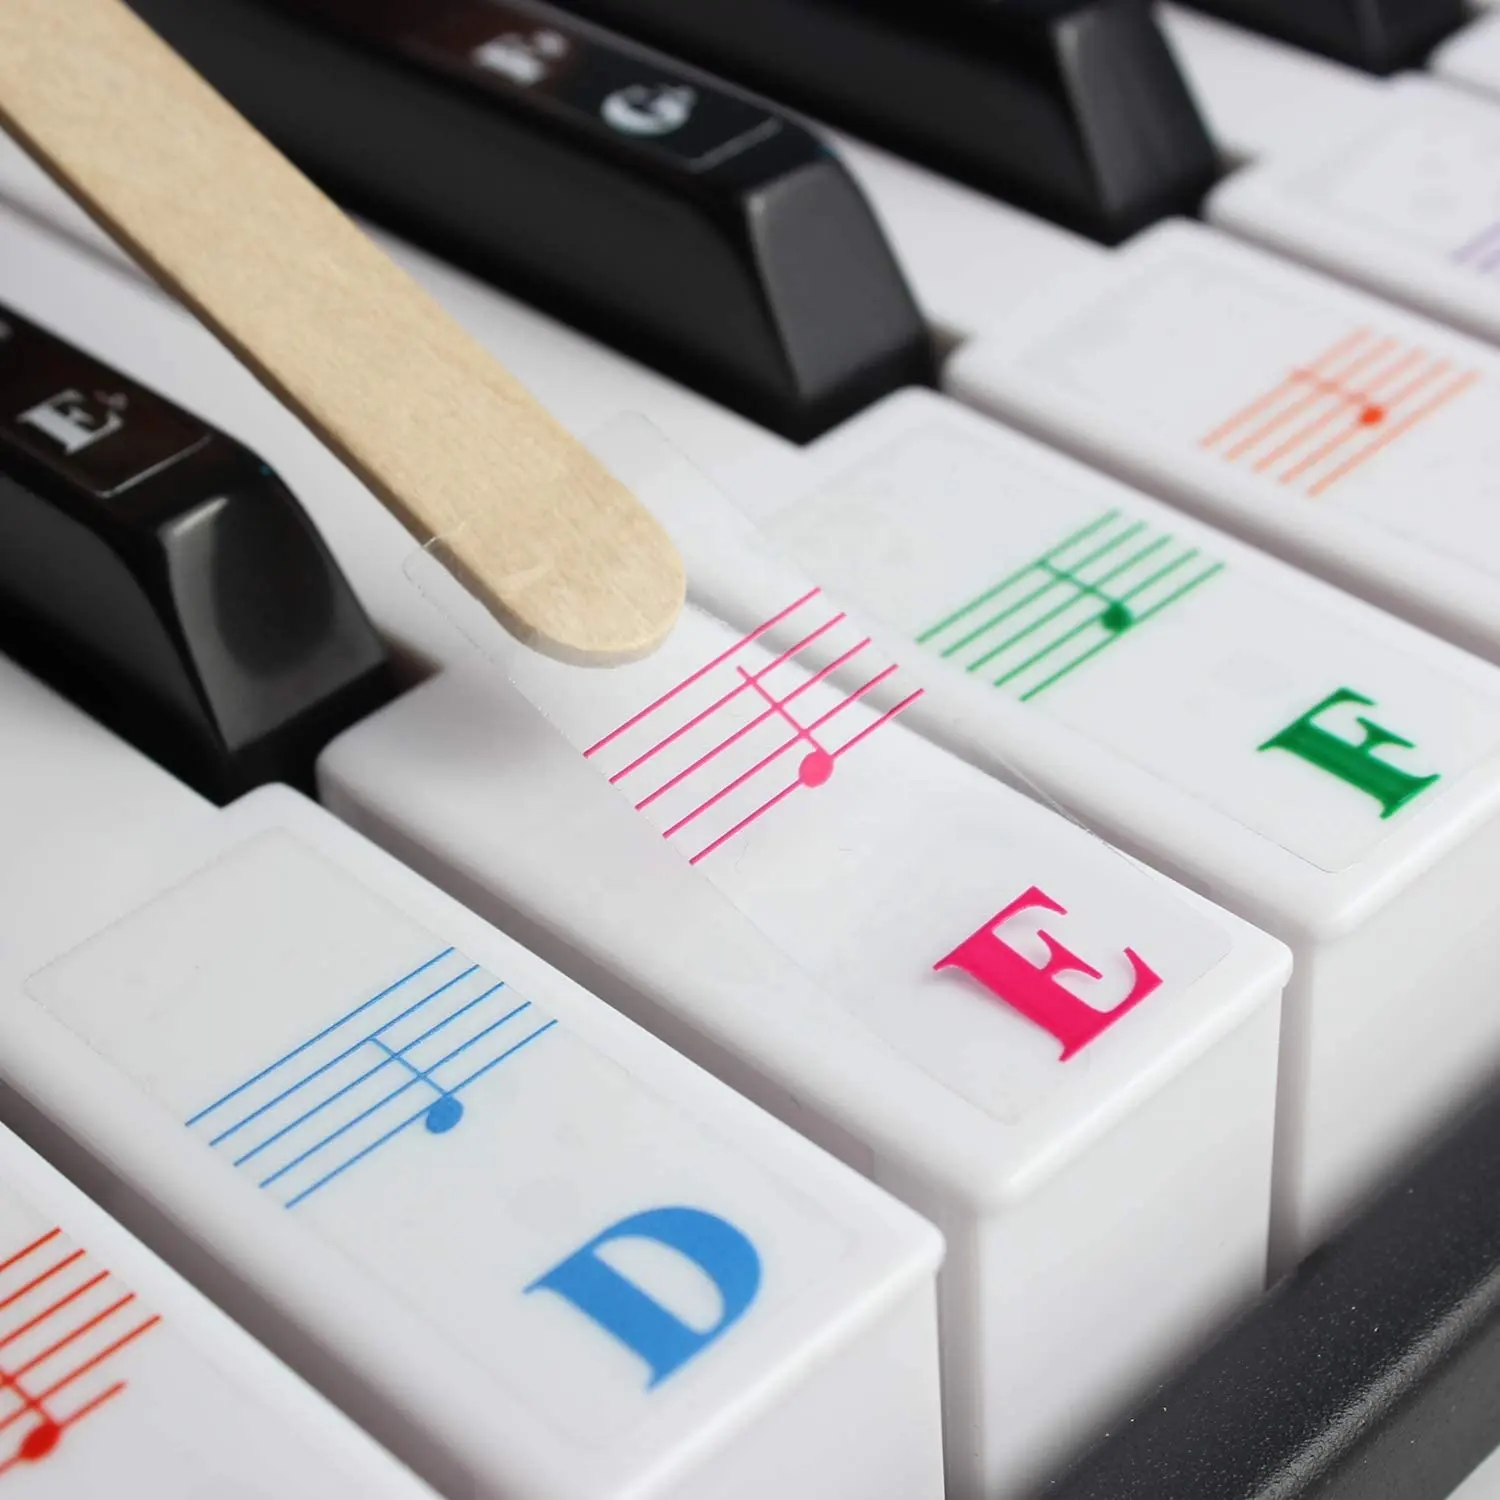 لوحة مفاتيح البيانو ملصقات ل 88/61/54/49/37 مفتاح. الملونة أكبر إلكتروني ، أرق المواد ، شفافة القابل للإزالة ، مع تنظيف الملابس